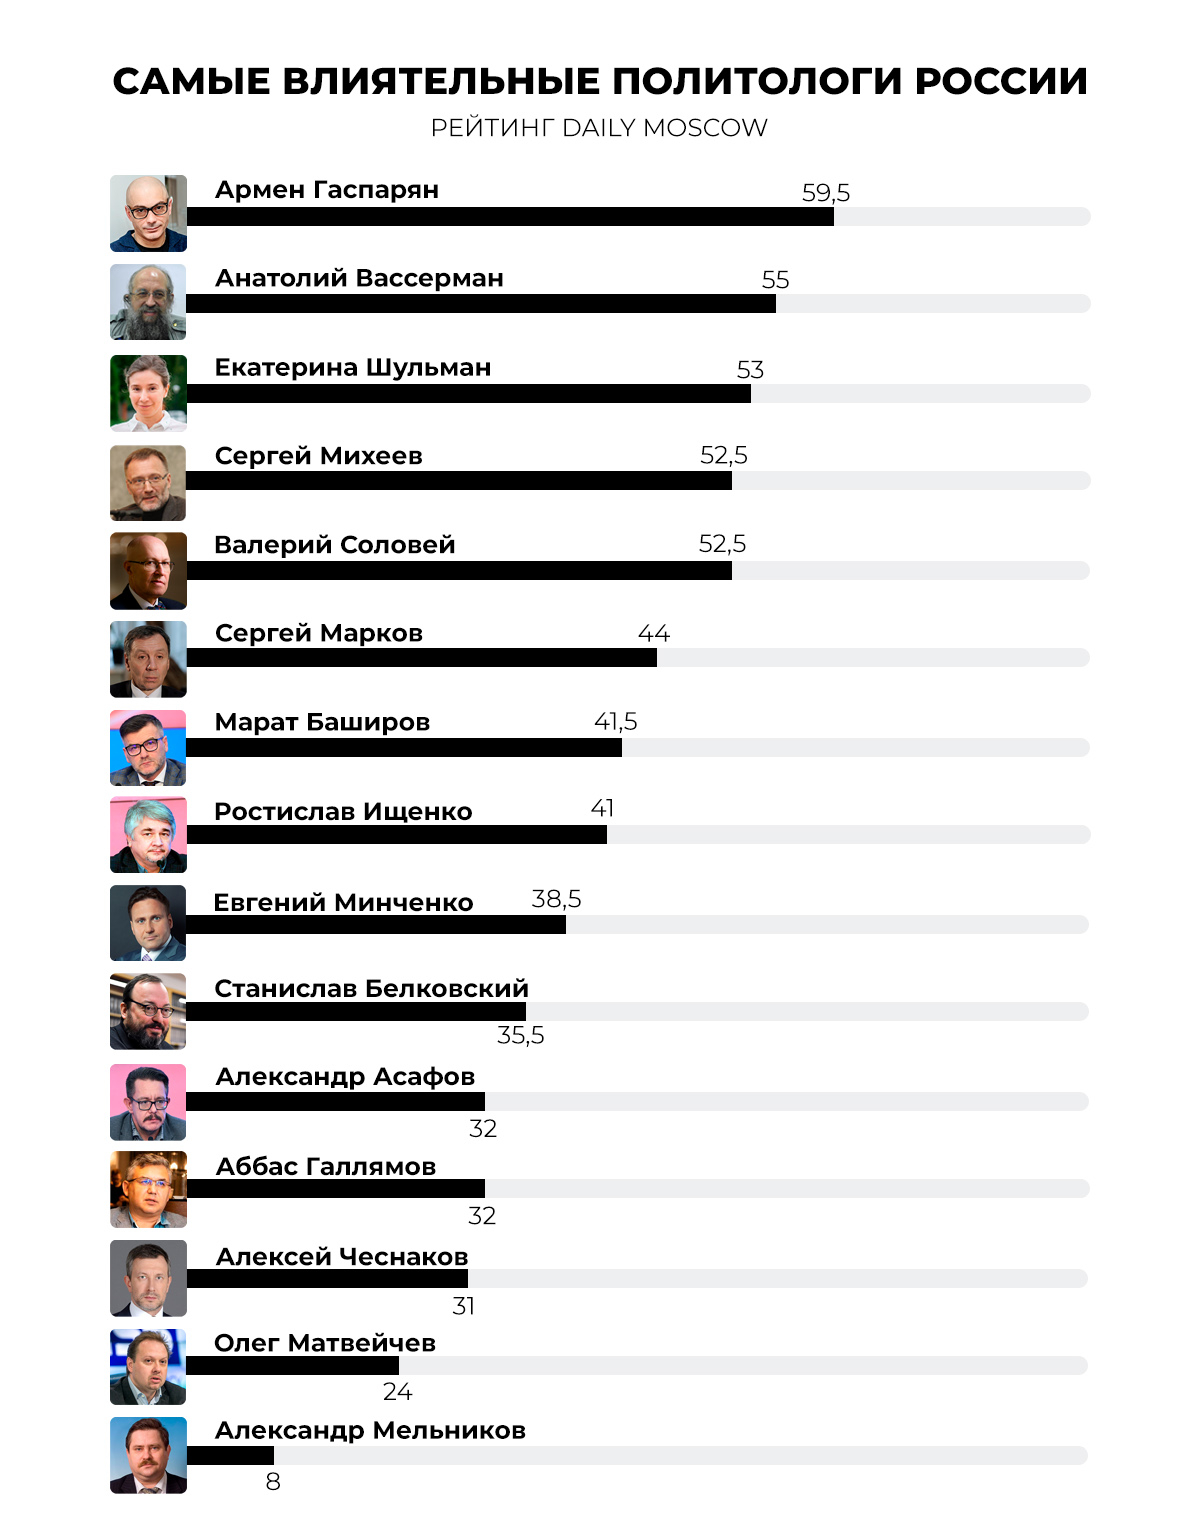 Итоговый рейтинг - самые влиятельные политологи России